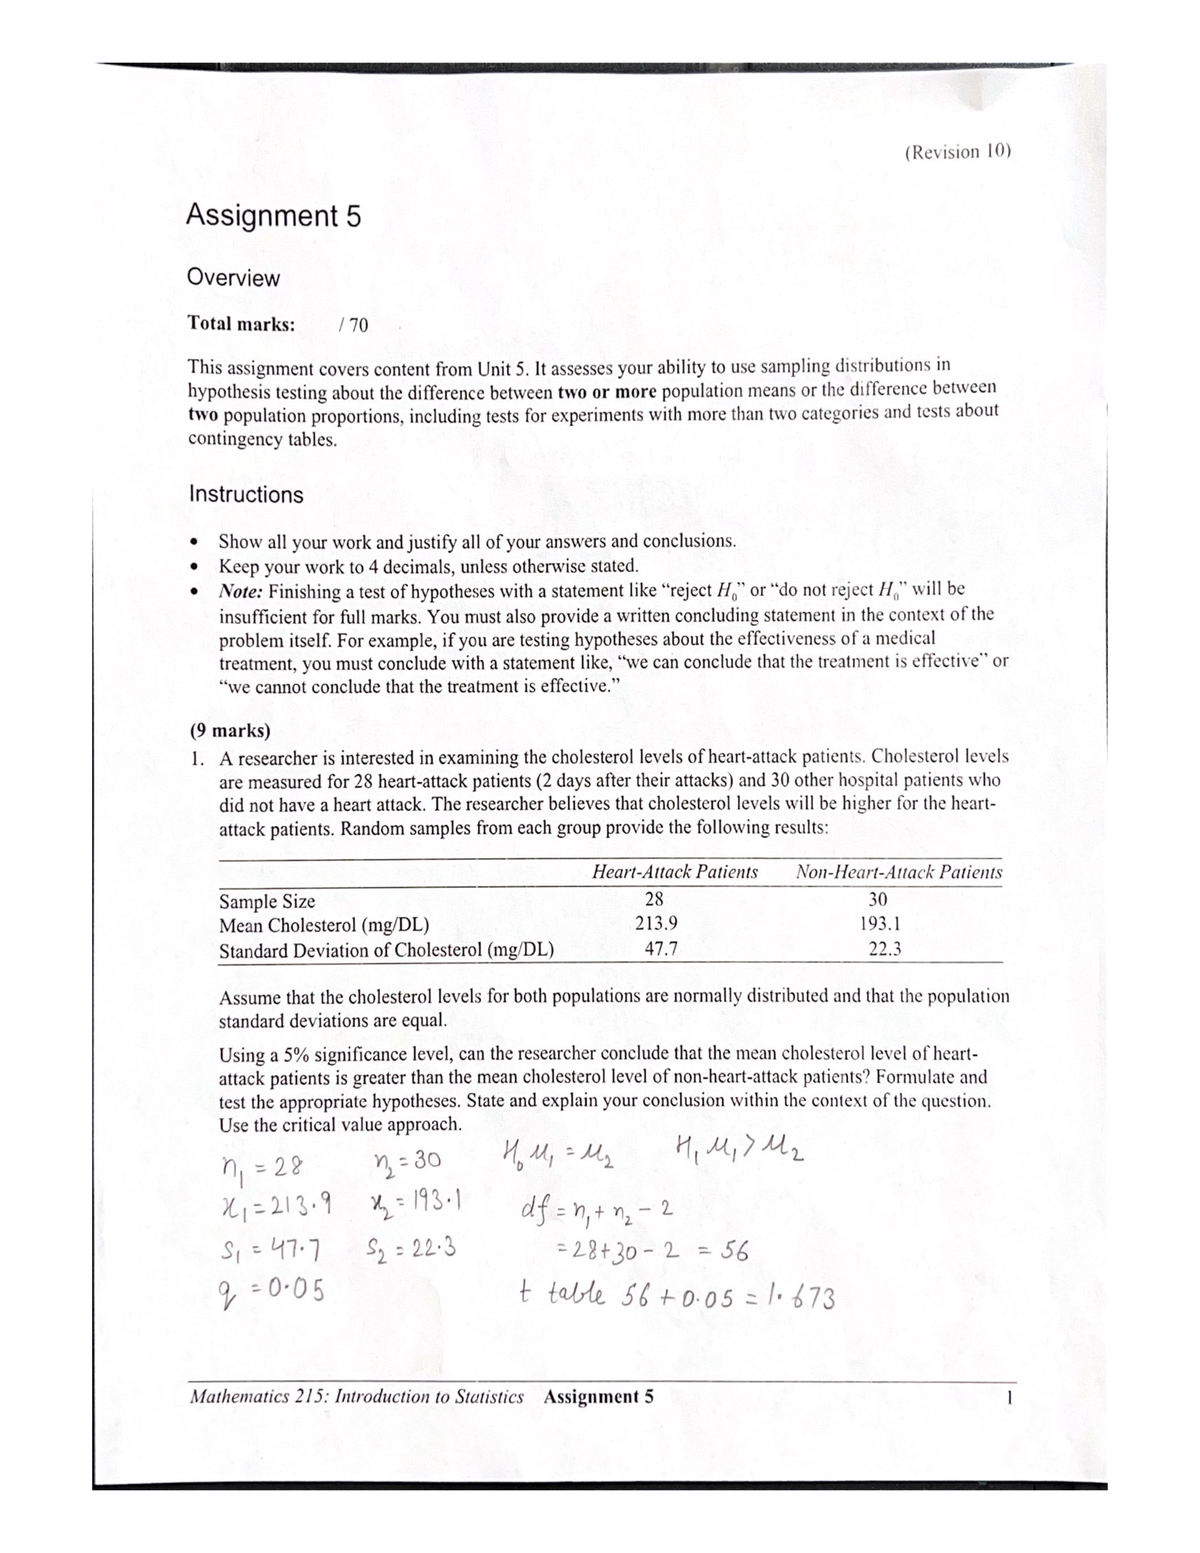 math 216 assignment 4